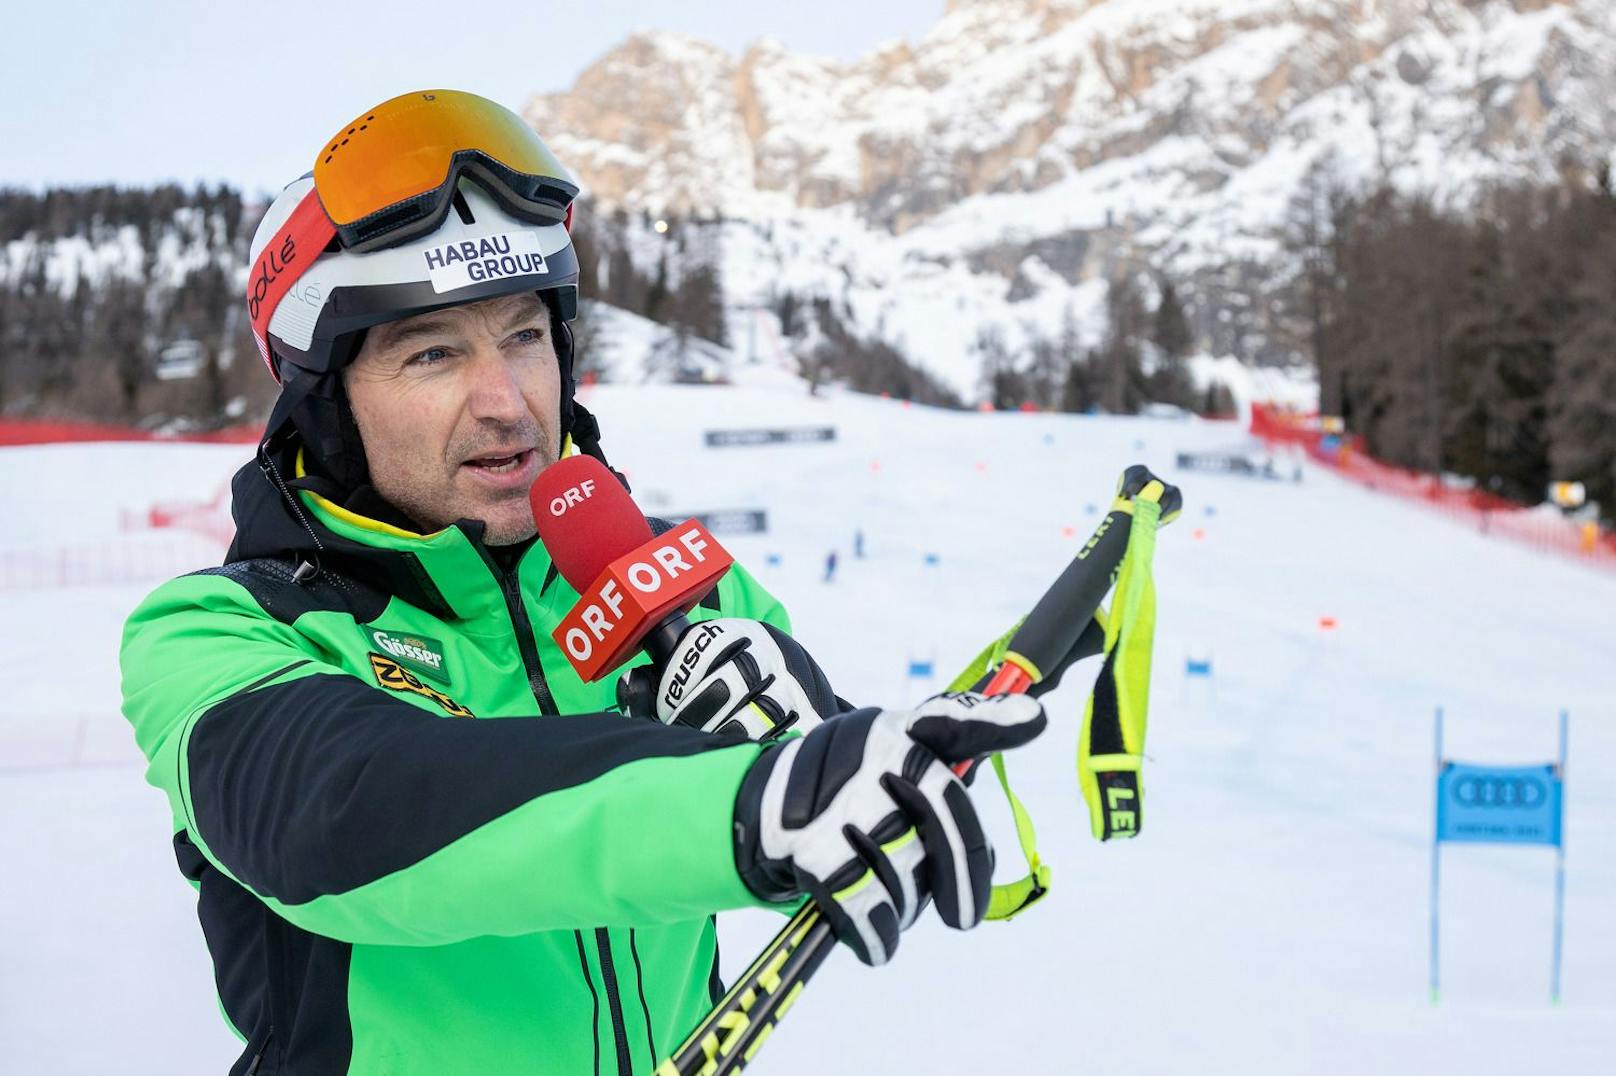 Hans Knauß ist nach wie vor ein gefragtes Werbegesicht. Das hat er auch seiner Präsenz als Speed-Experte im ORF zu verdanken. Der ehemalige Spitzenläufer ist aufgrund seiner flotten Sprüche und Emotionalität bei Ski-Fans beliebt.